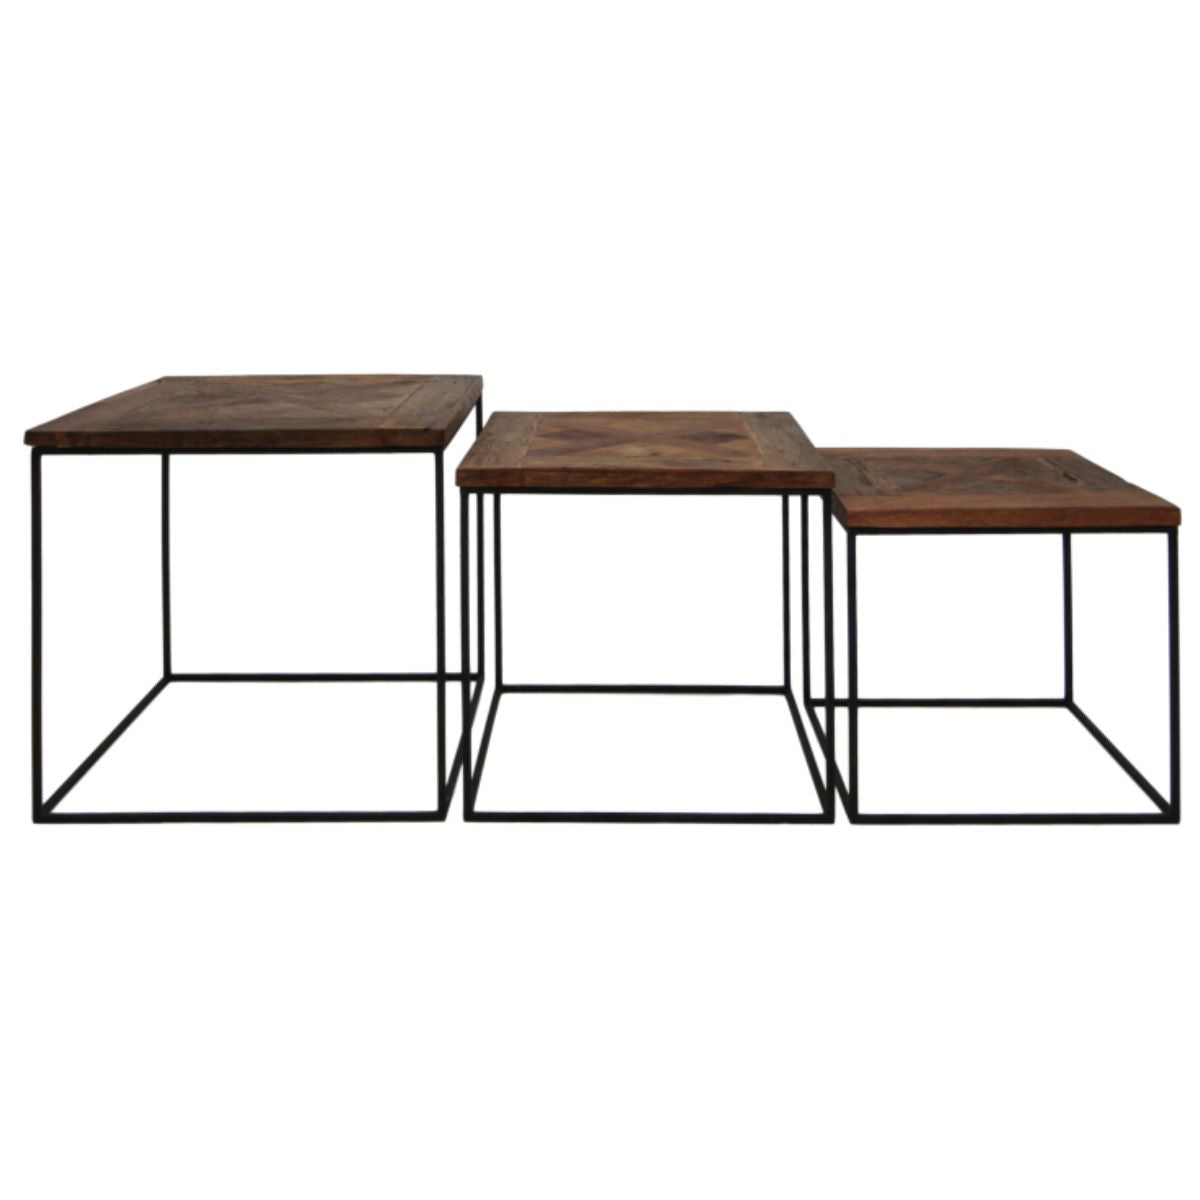 Multifunctionele salontafelset met eigentijds mangohout en ijzeren design.